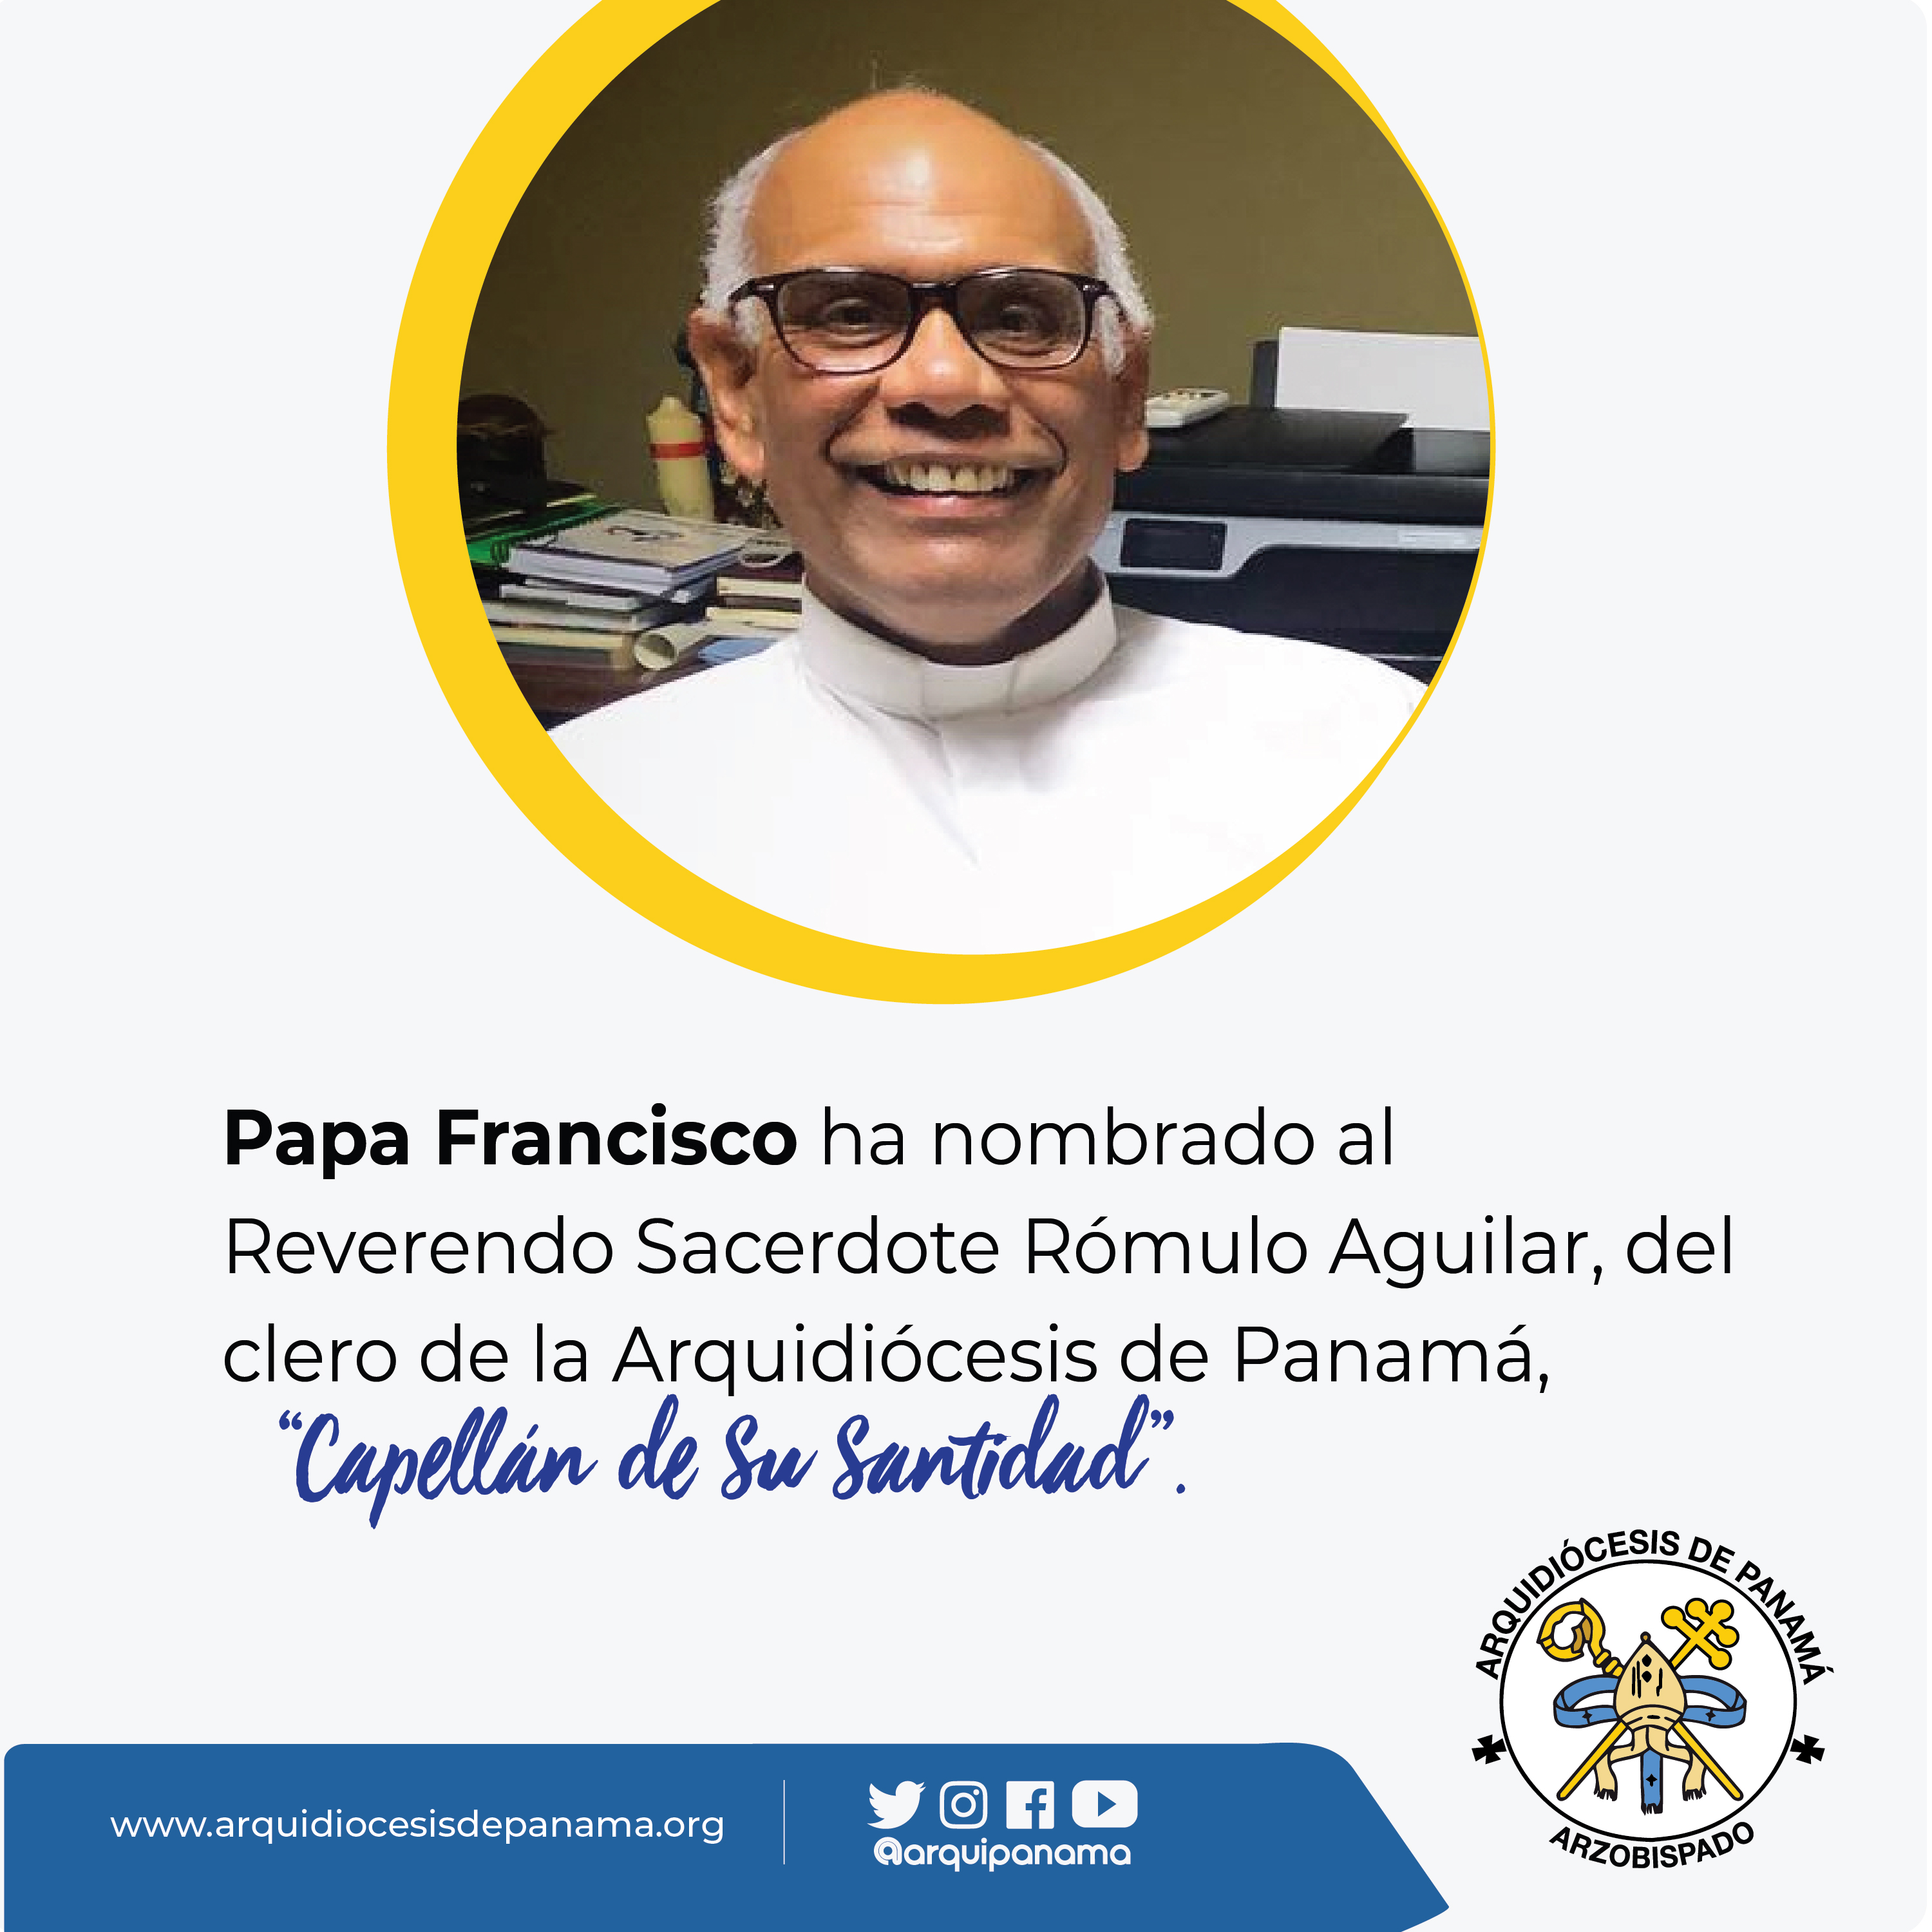 Padre Rómulo Aguilar designado “Capellán de Su Santidad”